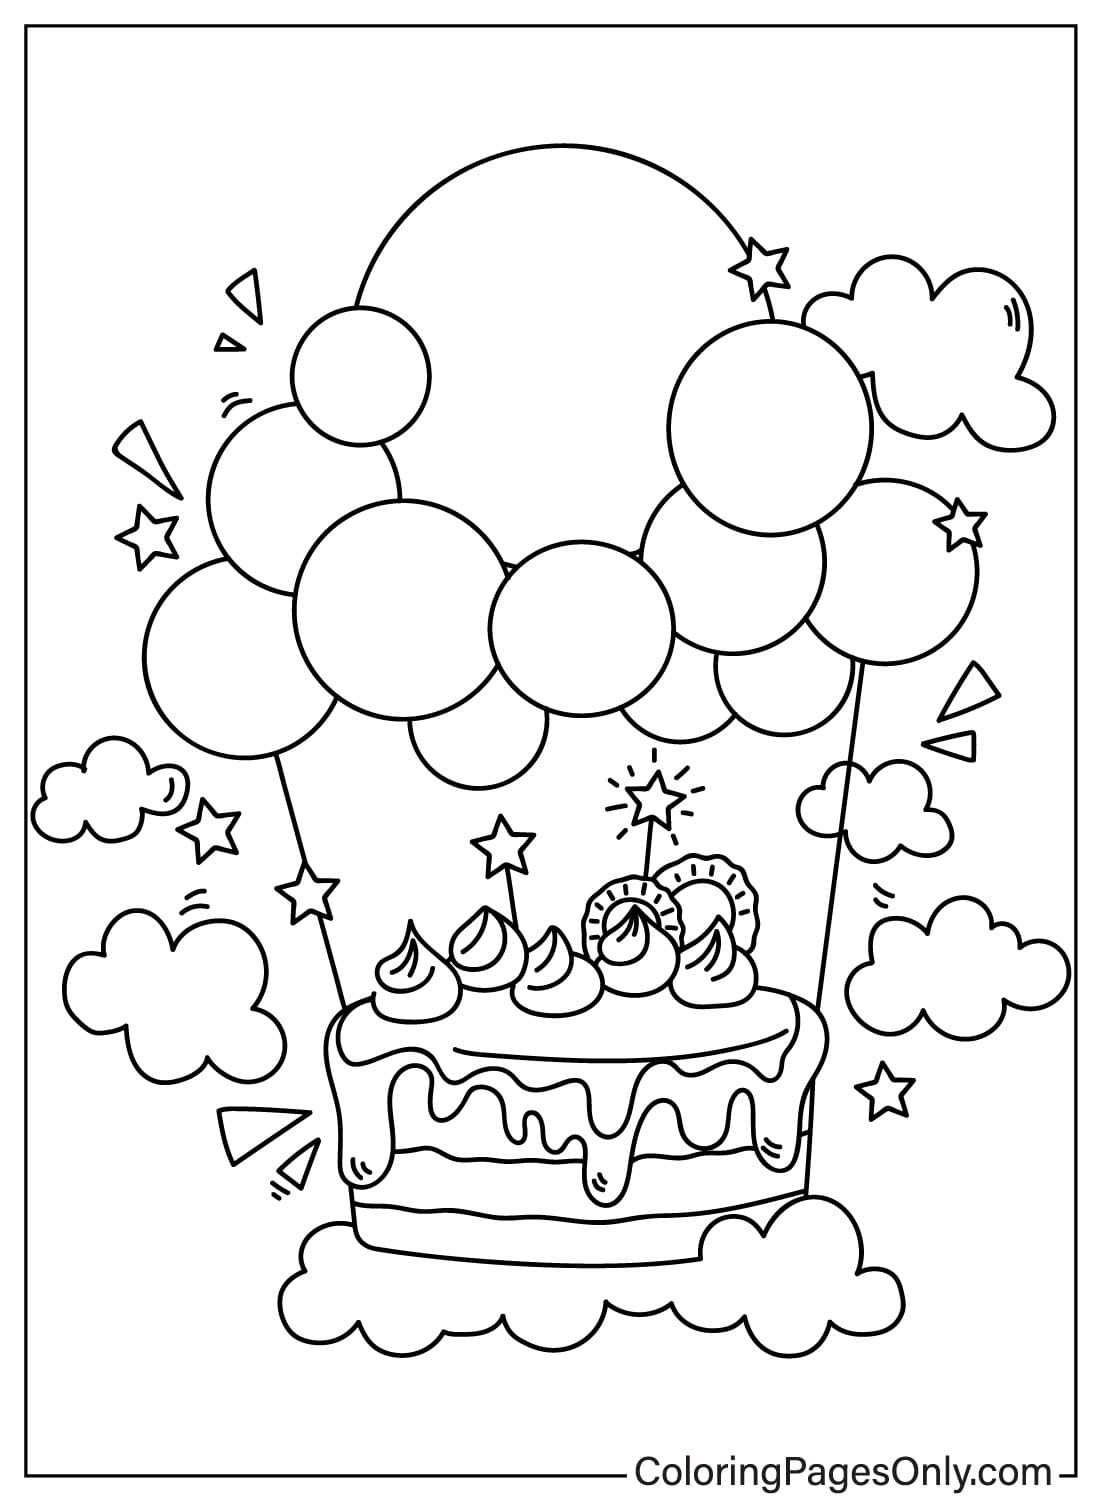 Disegno della torta di compleanno da colorare dalla torta di compleanno